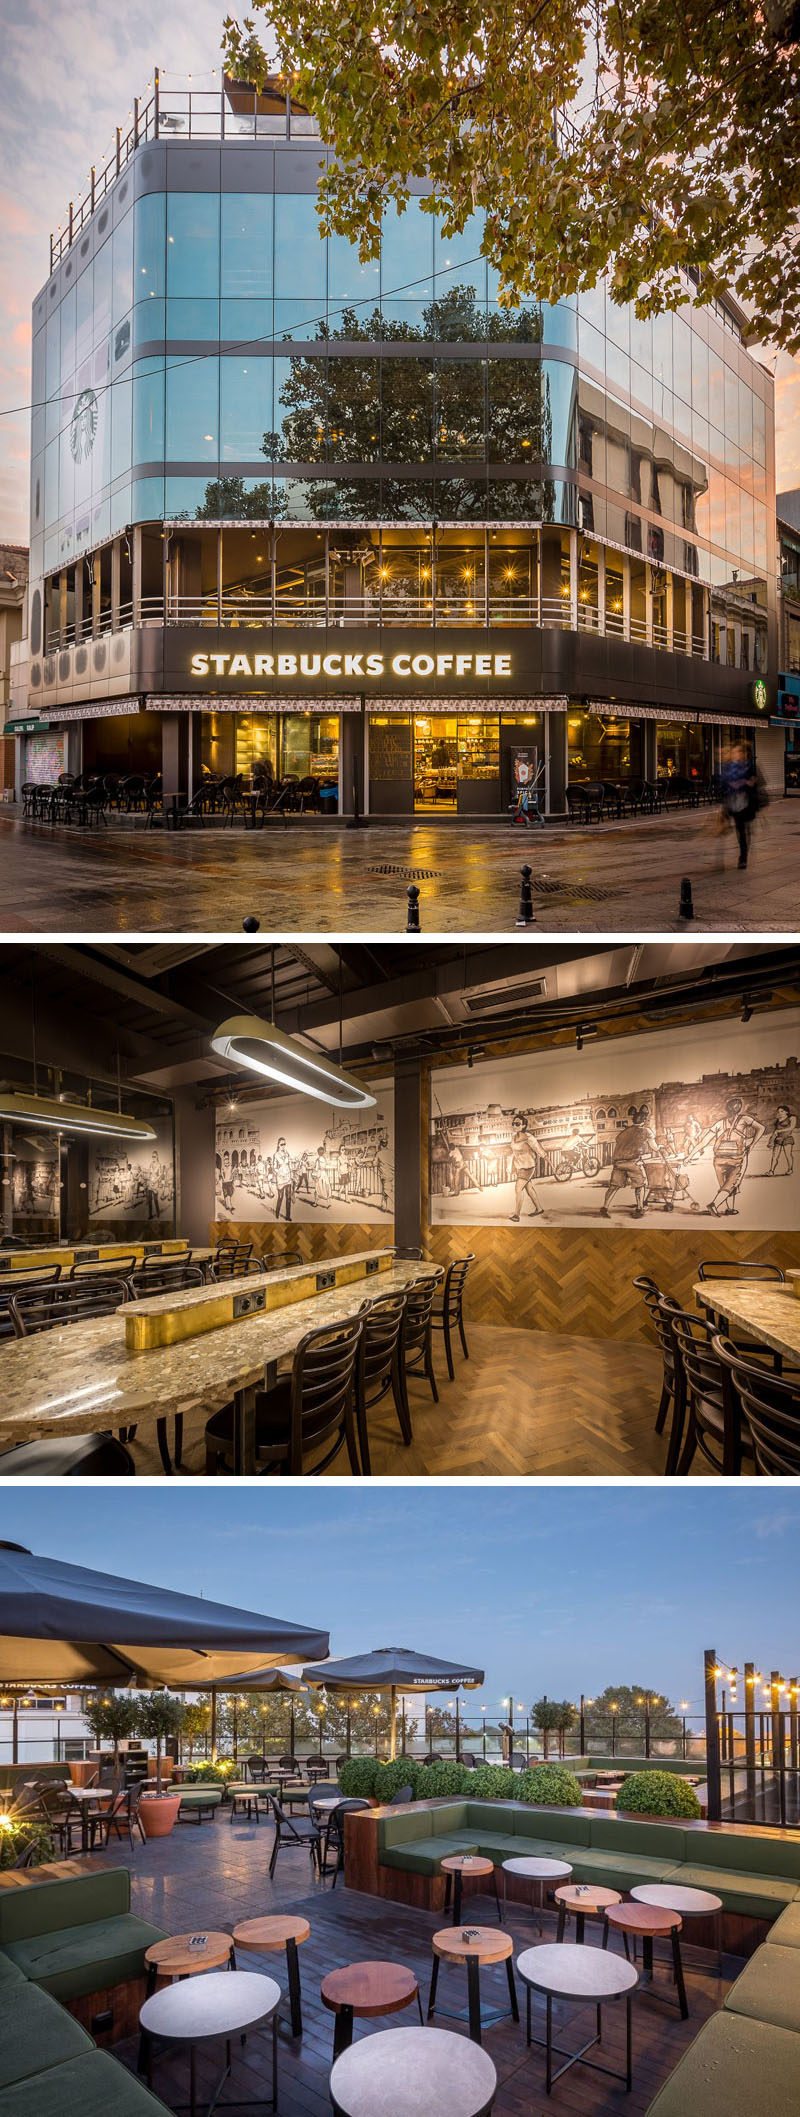 11 кофеен Starbucks со всего мира // Четырехуровневая локация с патио на крыше, откуда открывается вид на стамбульский пролив Босфор, и высокими окнами, чтобы сидящие внутри могли наслаждаться видами на воду и окружающий город.